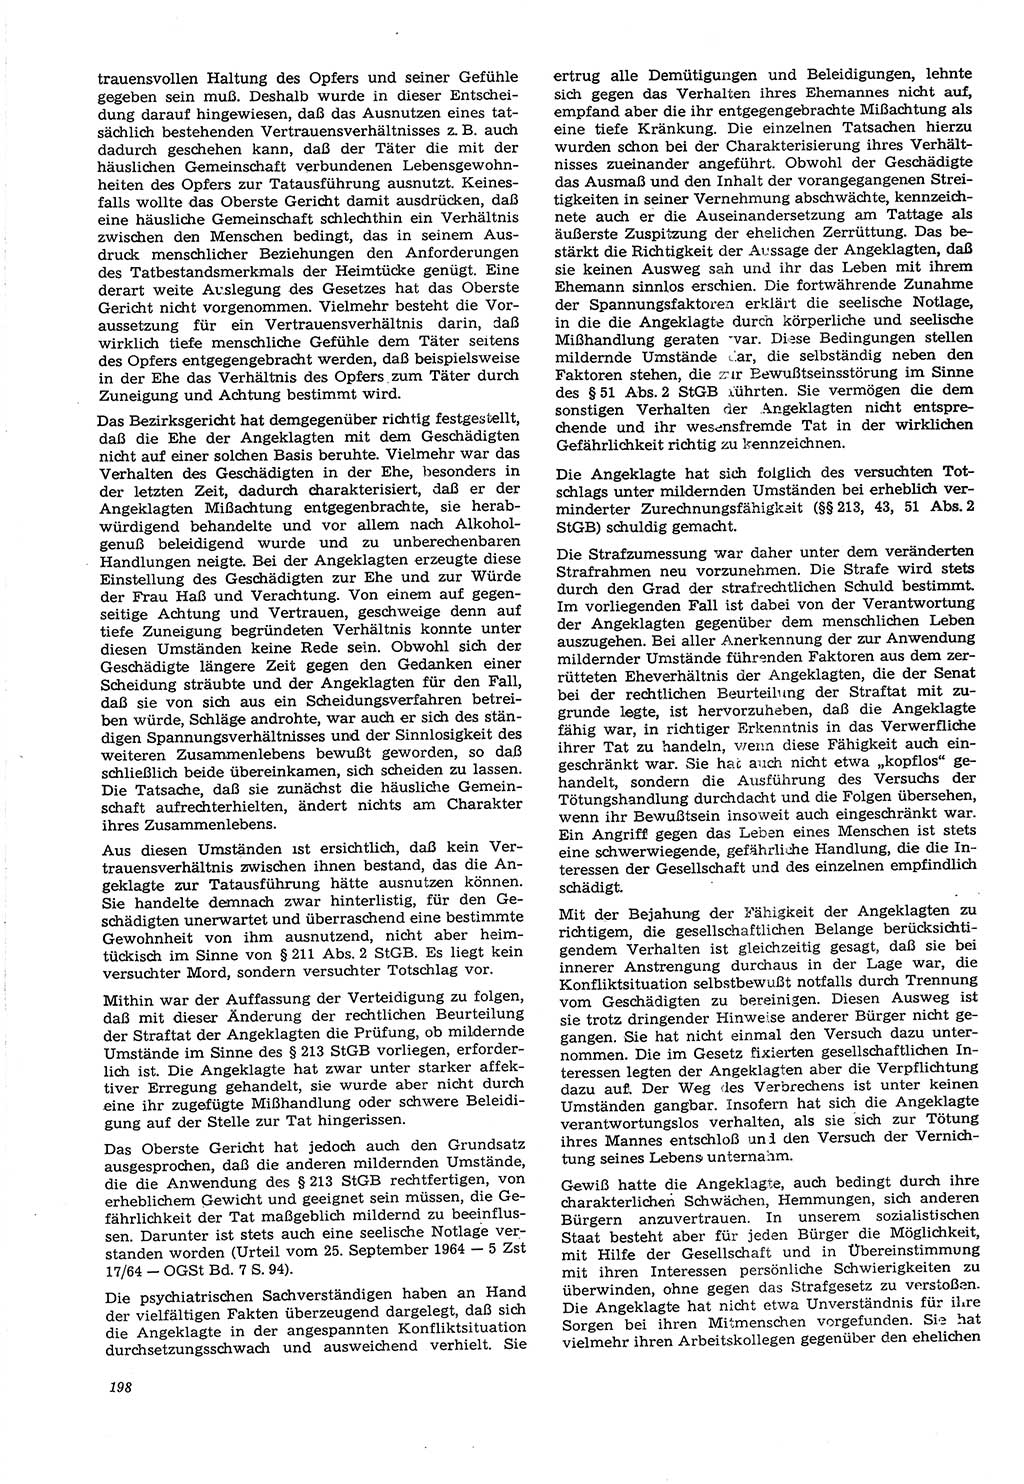 Neue Justiz (NJ), Zeitschrift für Recht und Rechtswissenschaft [Deutsche Demokratische Republik (DDR)], 21. Jahrgang 1967, Seite 198 (NJ DDR 1967, S. 198)